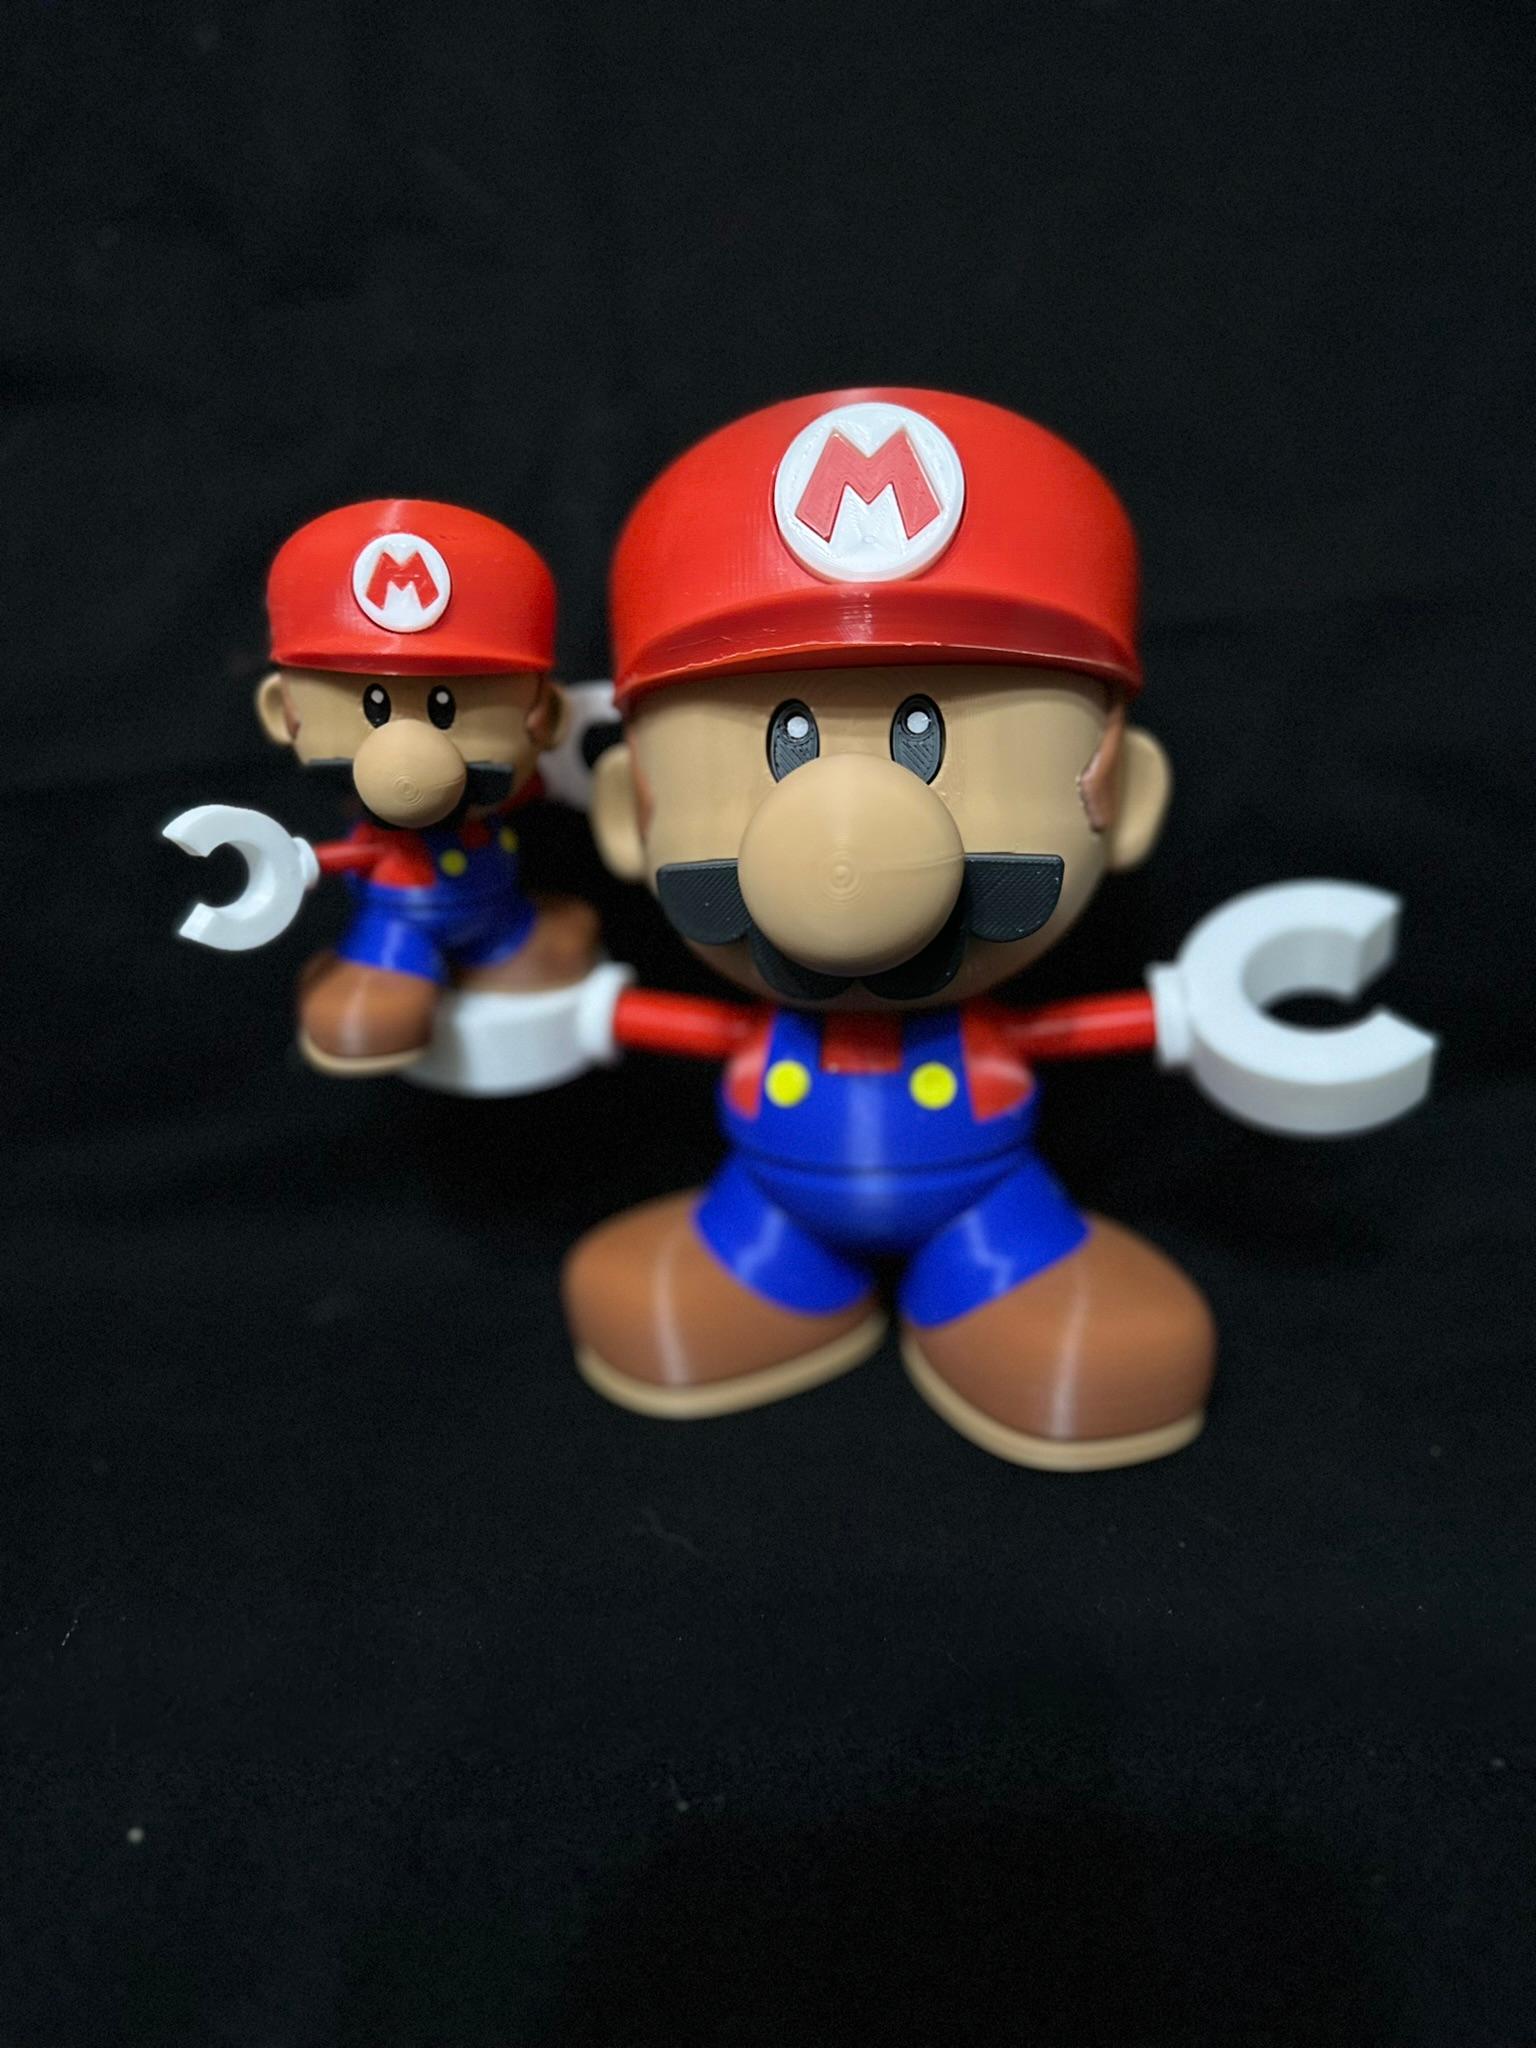 Articulating Toy Mini Mario multi part 3d model